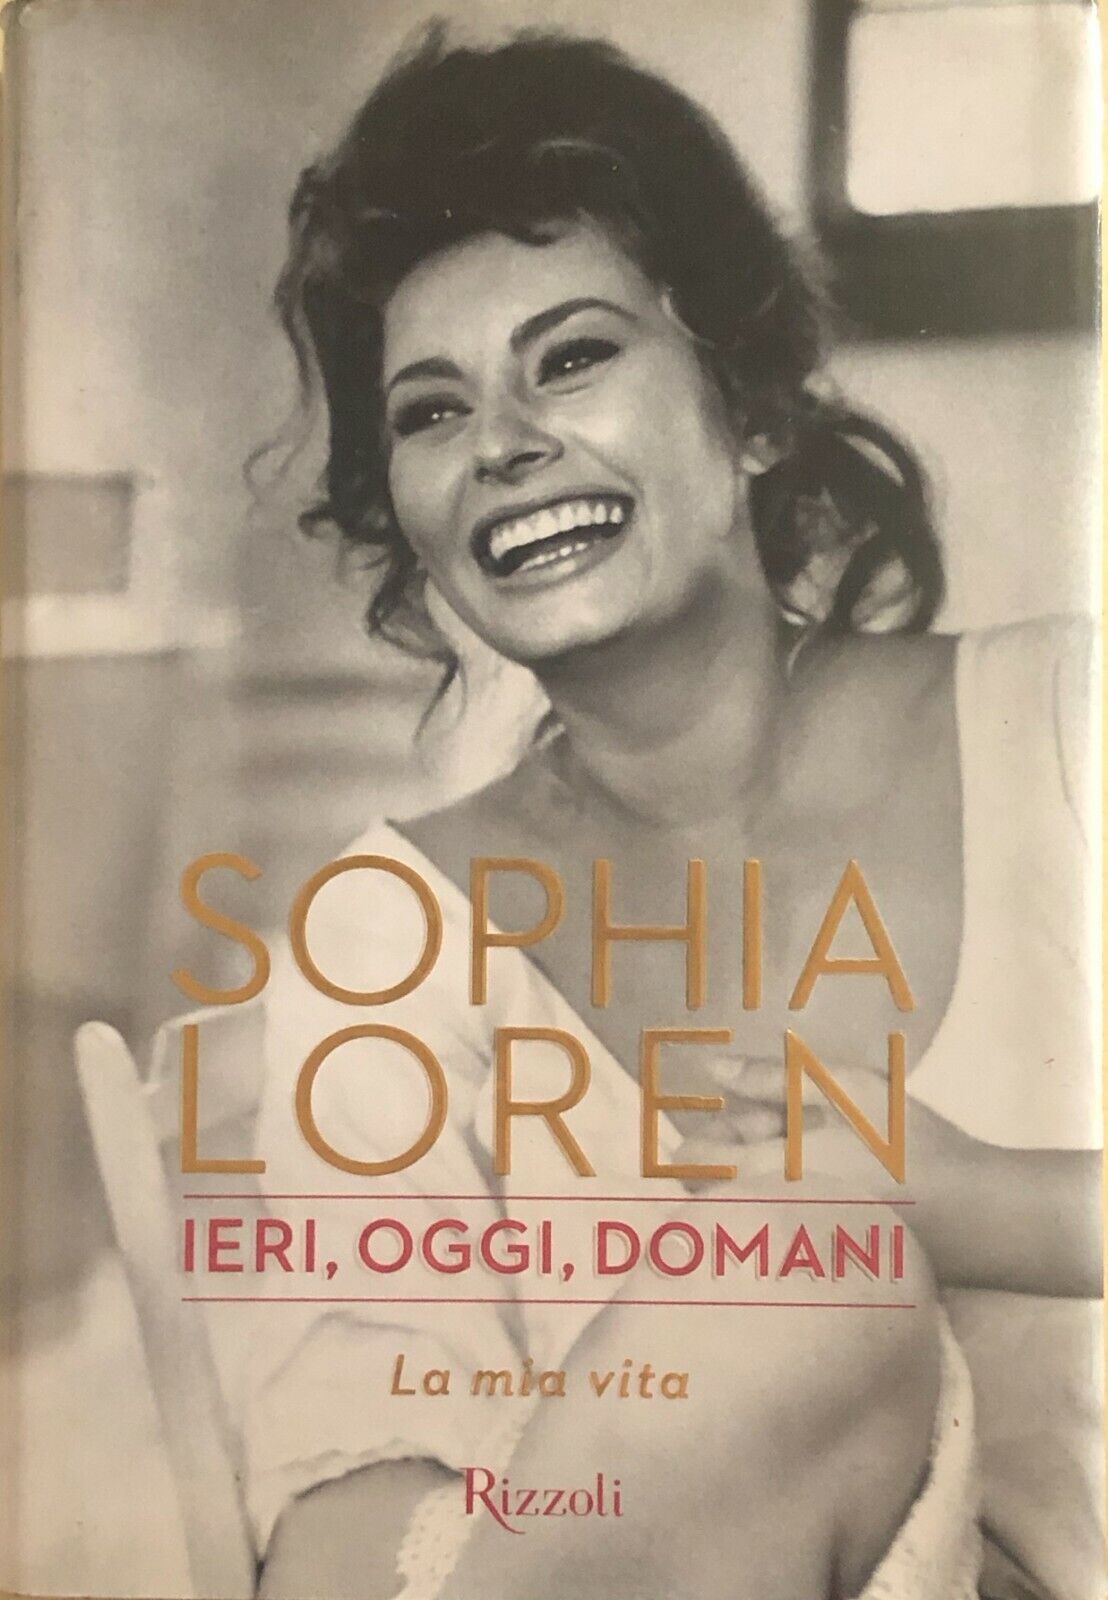 Ieri, oggi, domani. La mia vita di Sophia Loren, 2014, Rizzoli